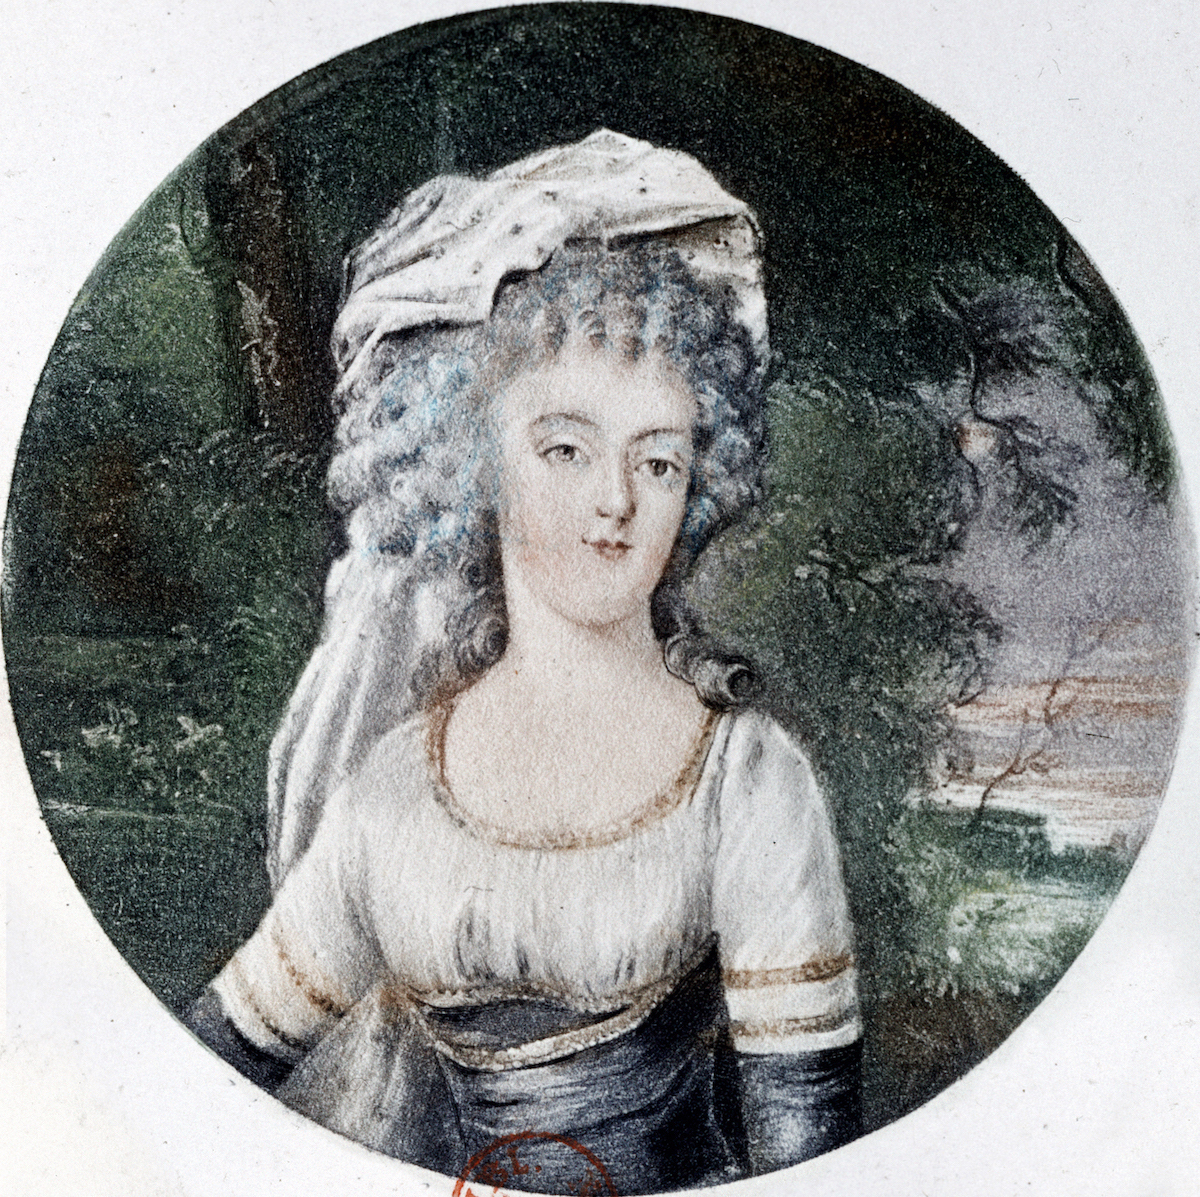 Portrait of Marie Antoinette in vignette form